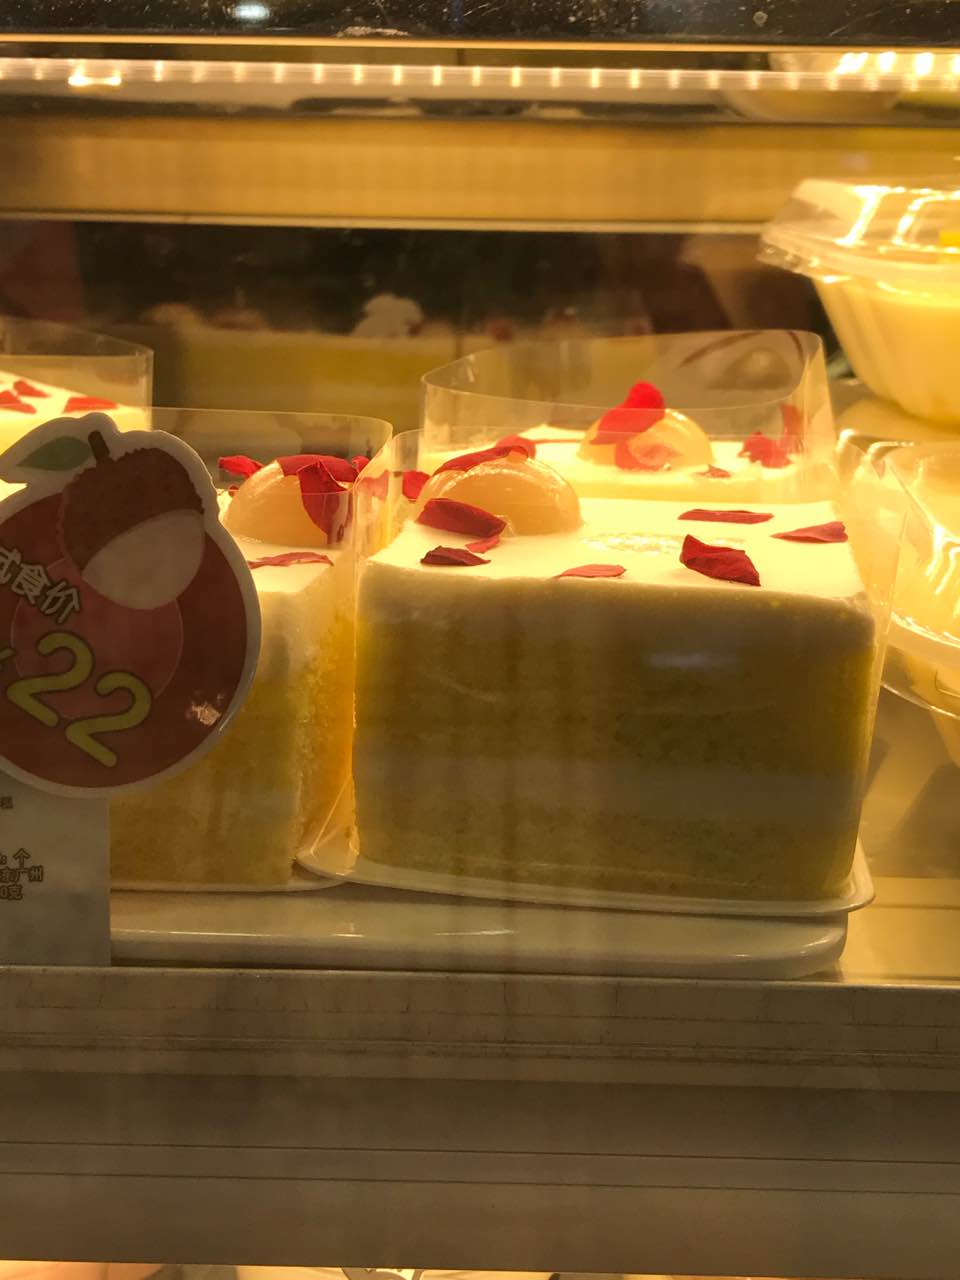 2021美心西饼mx cakes(太阳新天地店)美食餐厅,买了一个芝士蛋糕,送了